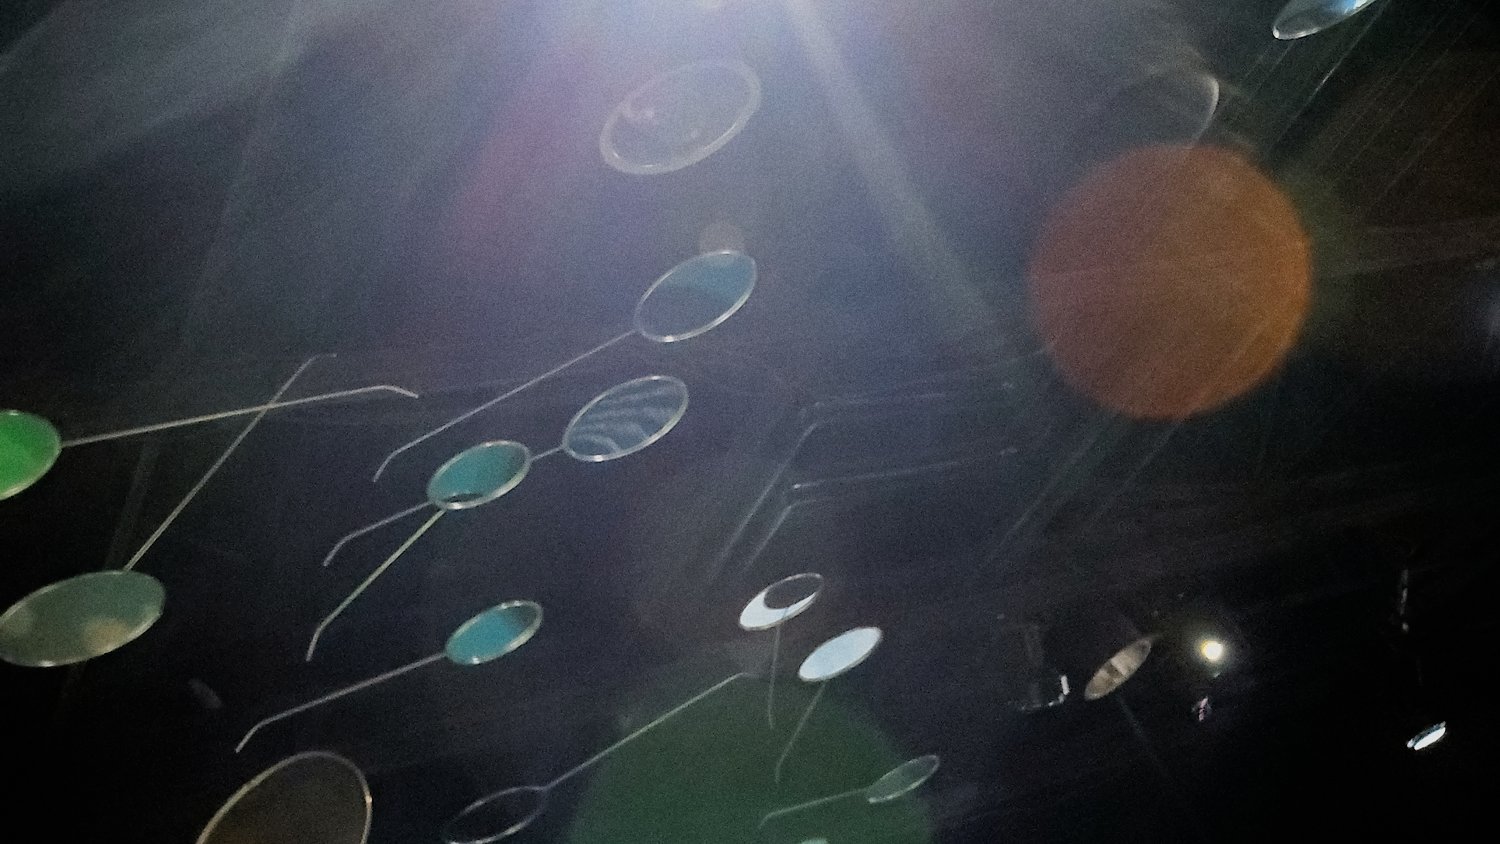 Reflective ceiling art at Shedd Aquarium.